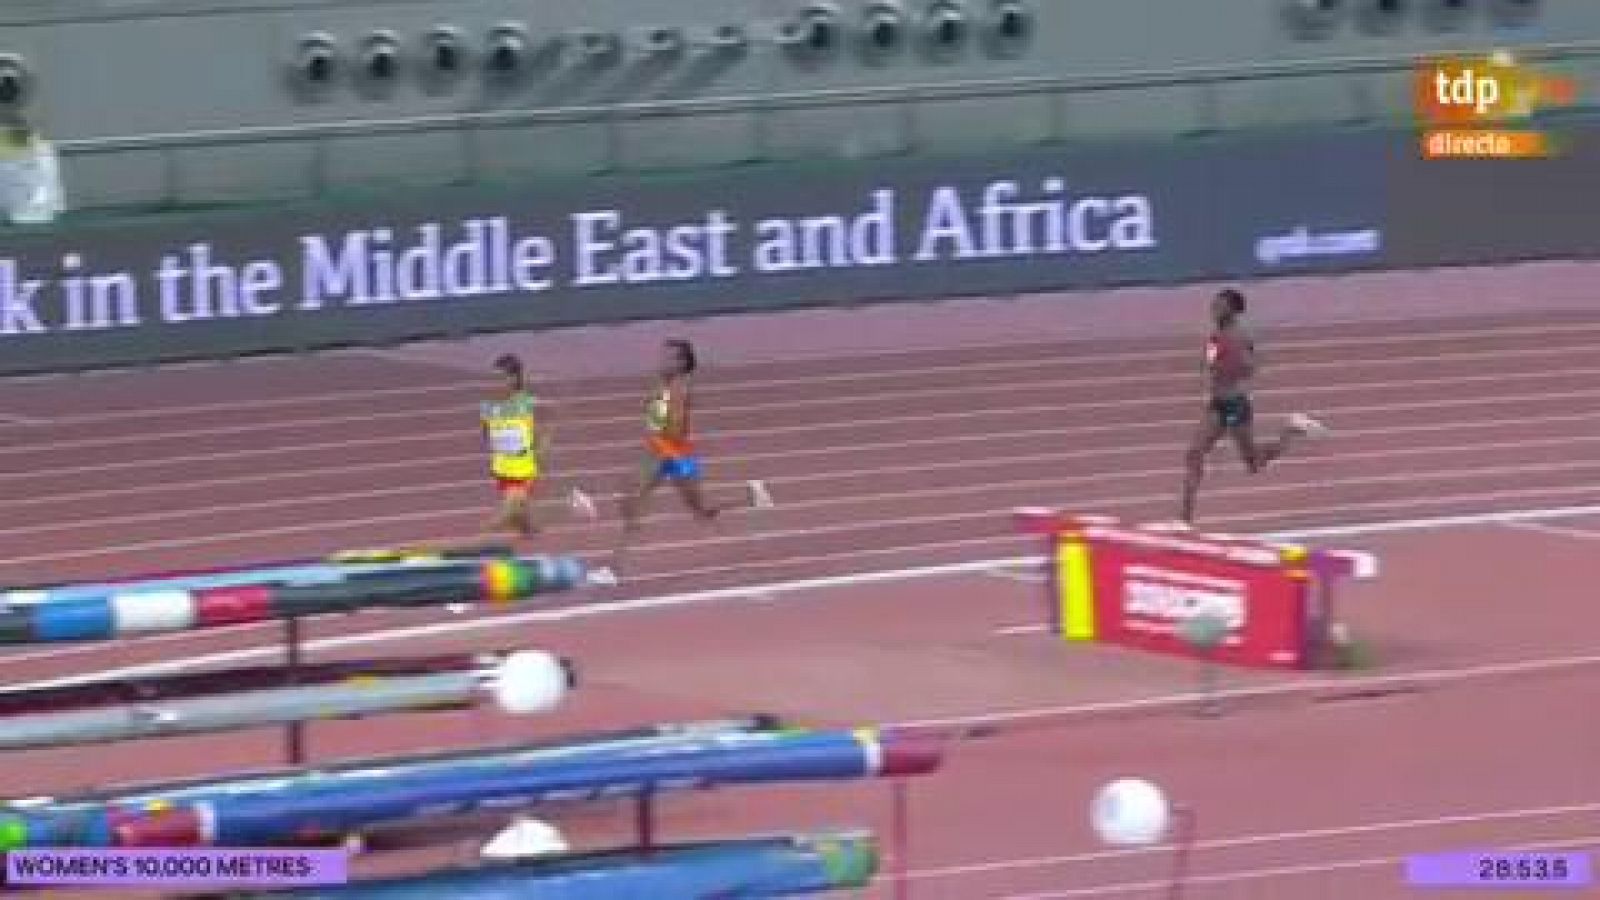 Mundial de atletismo | Sifan Hassan corona su gran temporada con el oro en 10.000 metros